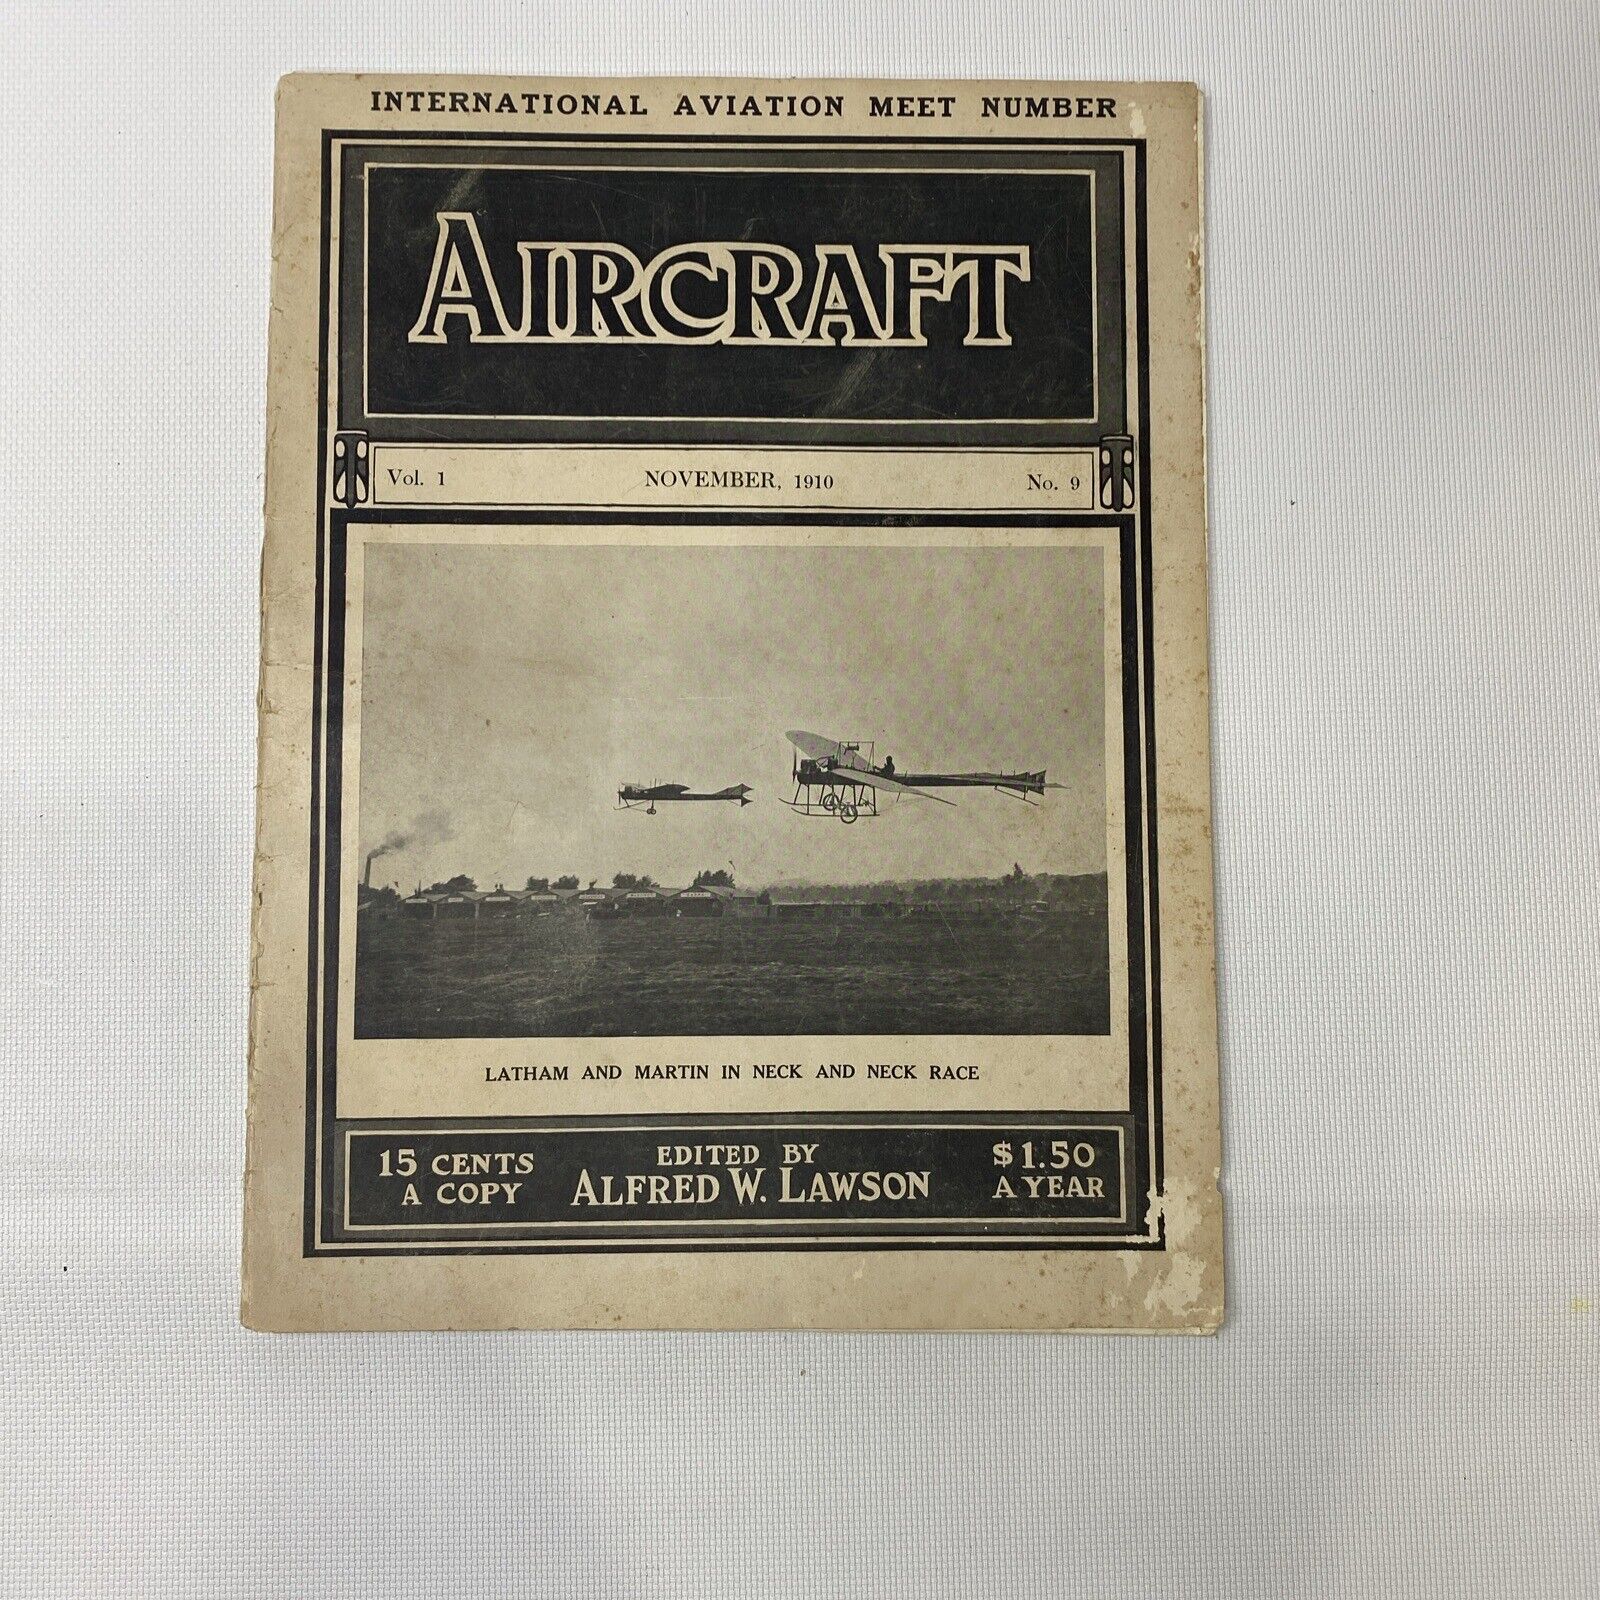 RARE 1910 Aircraft Magazine - September, 1910 Vol 1. No. 9 Aviation Airplane EX.